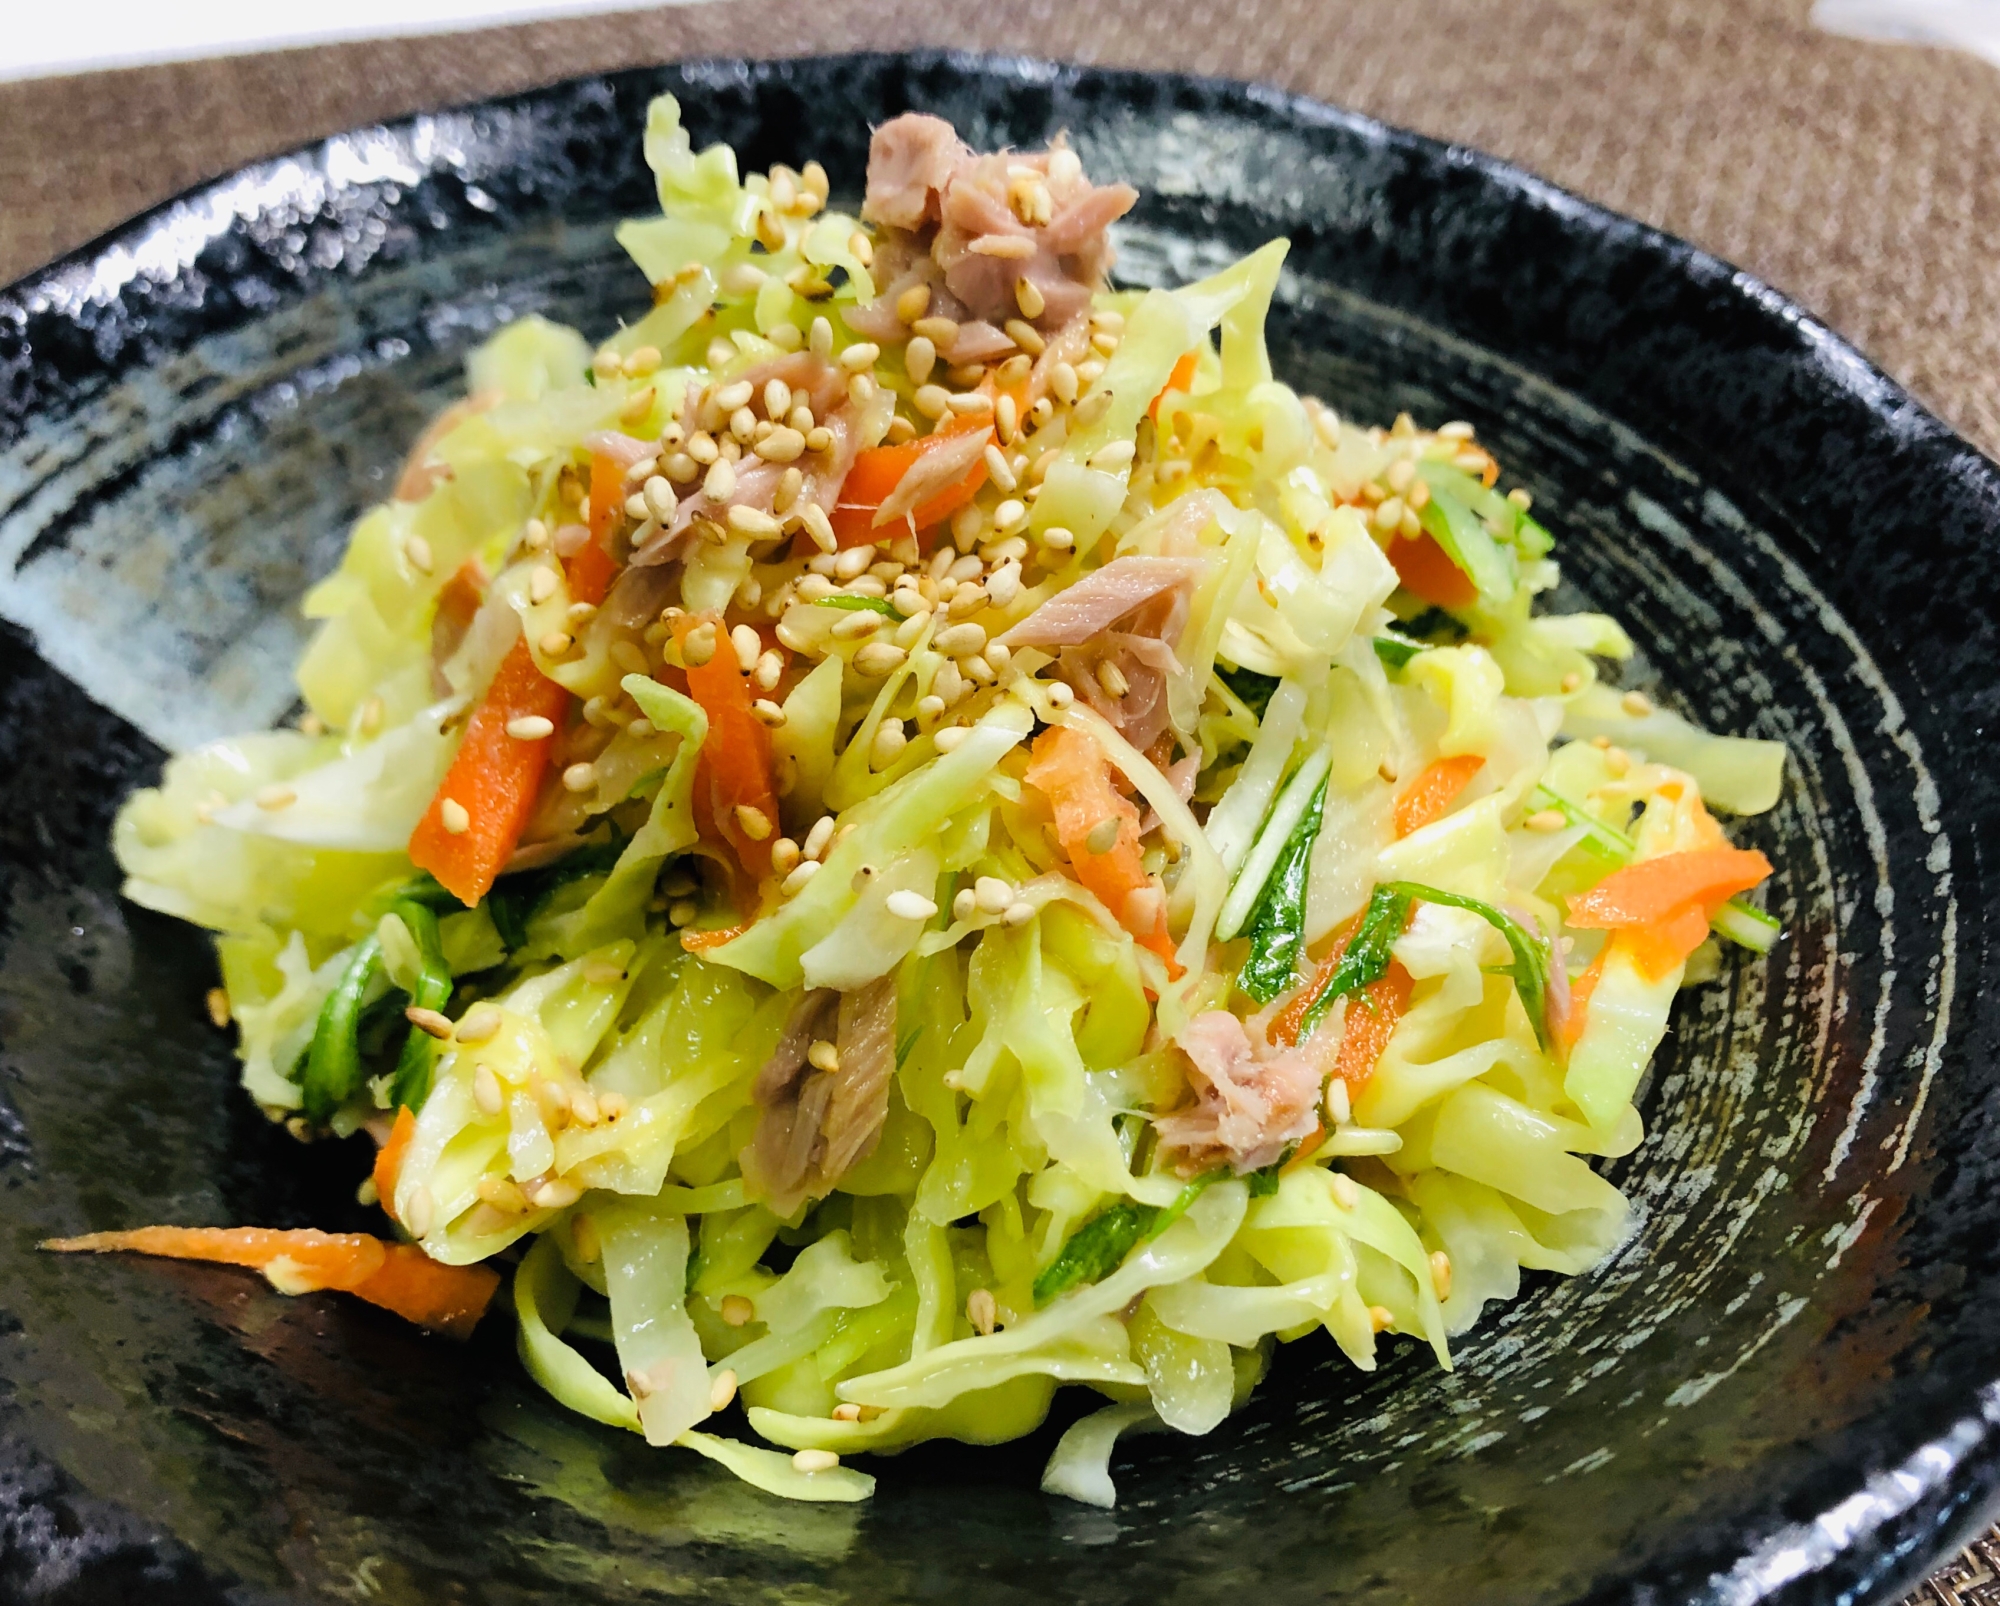 中華風温野菜サラダ